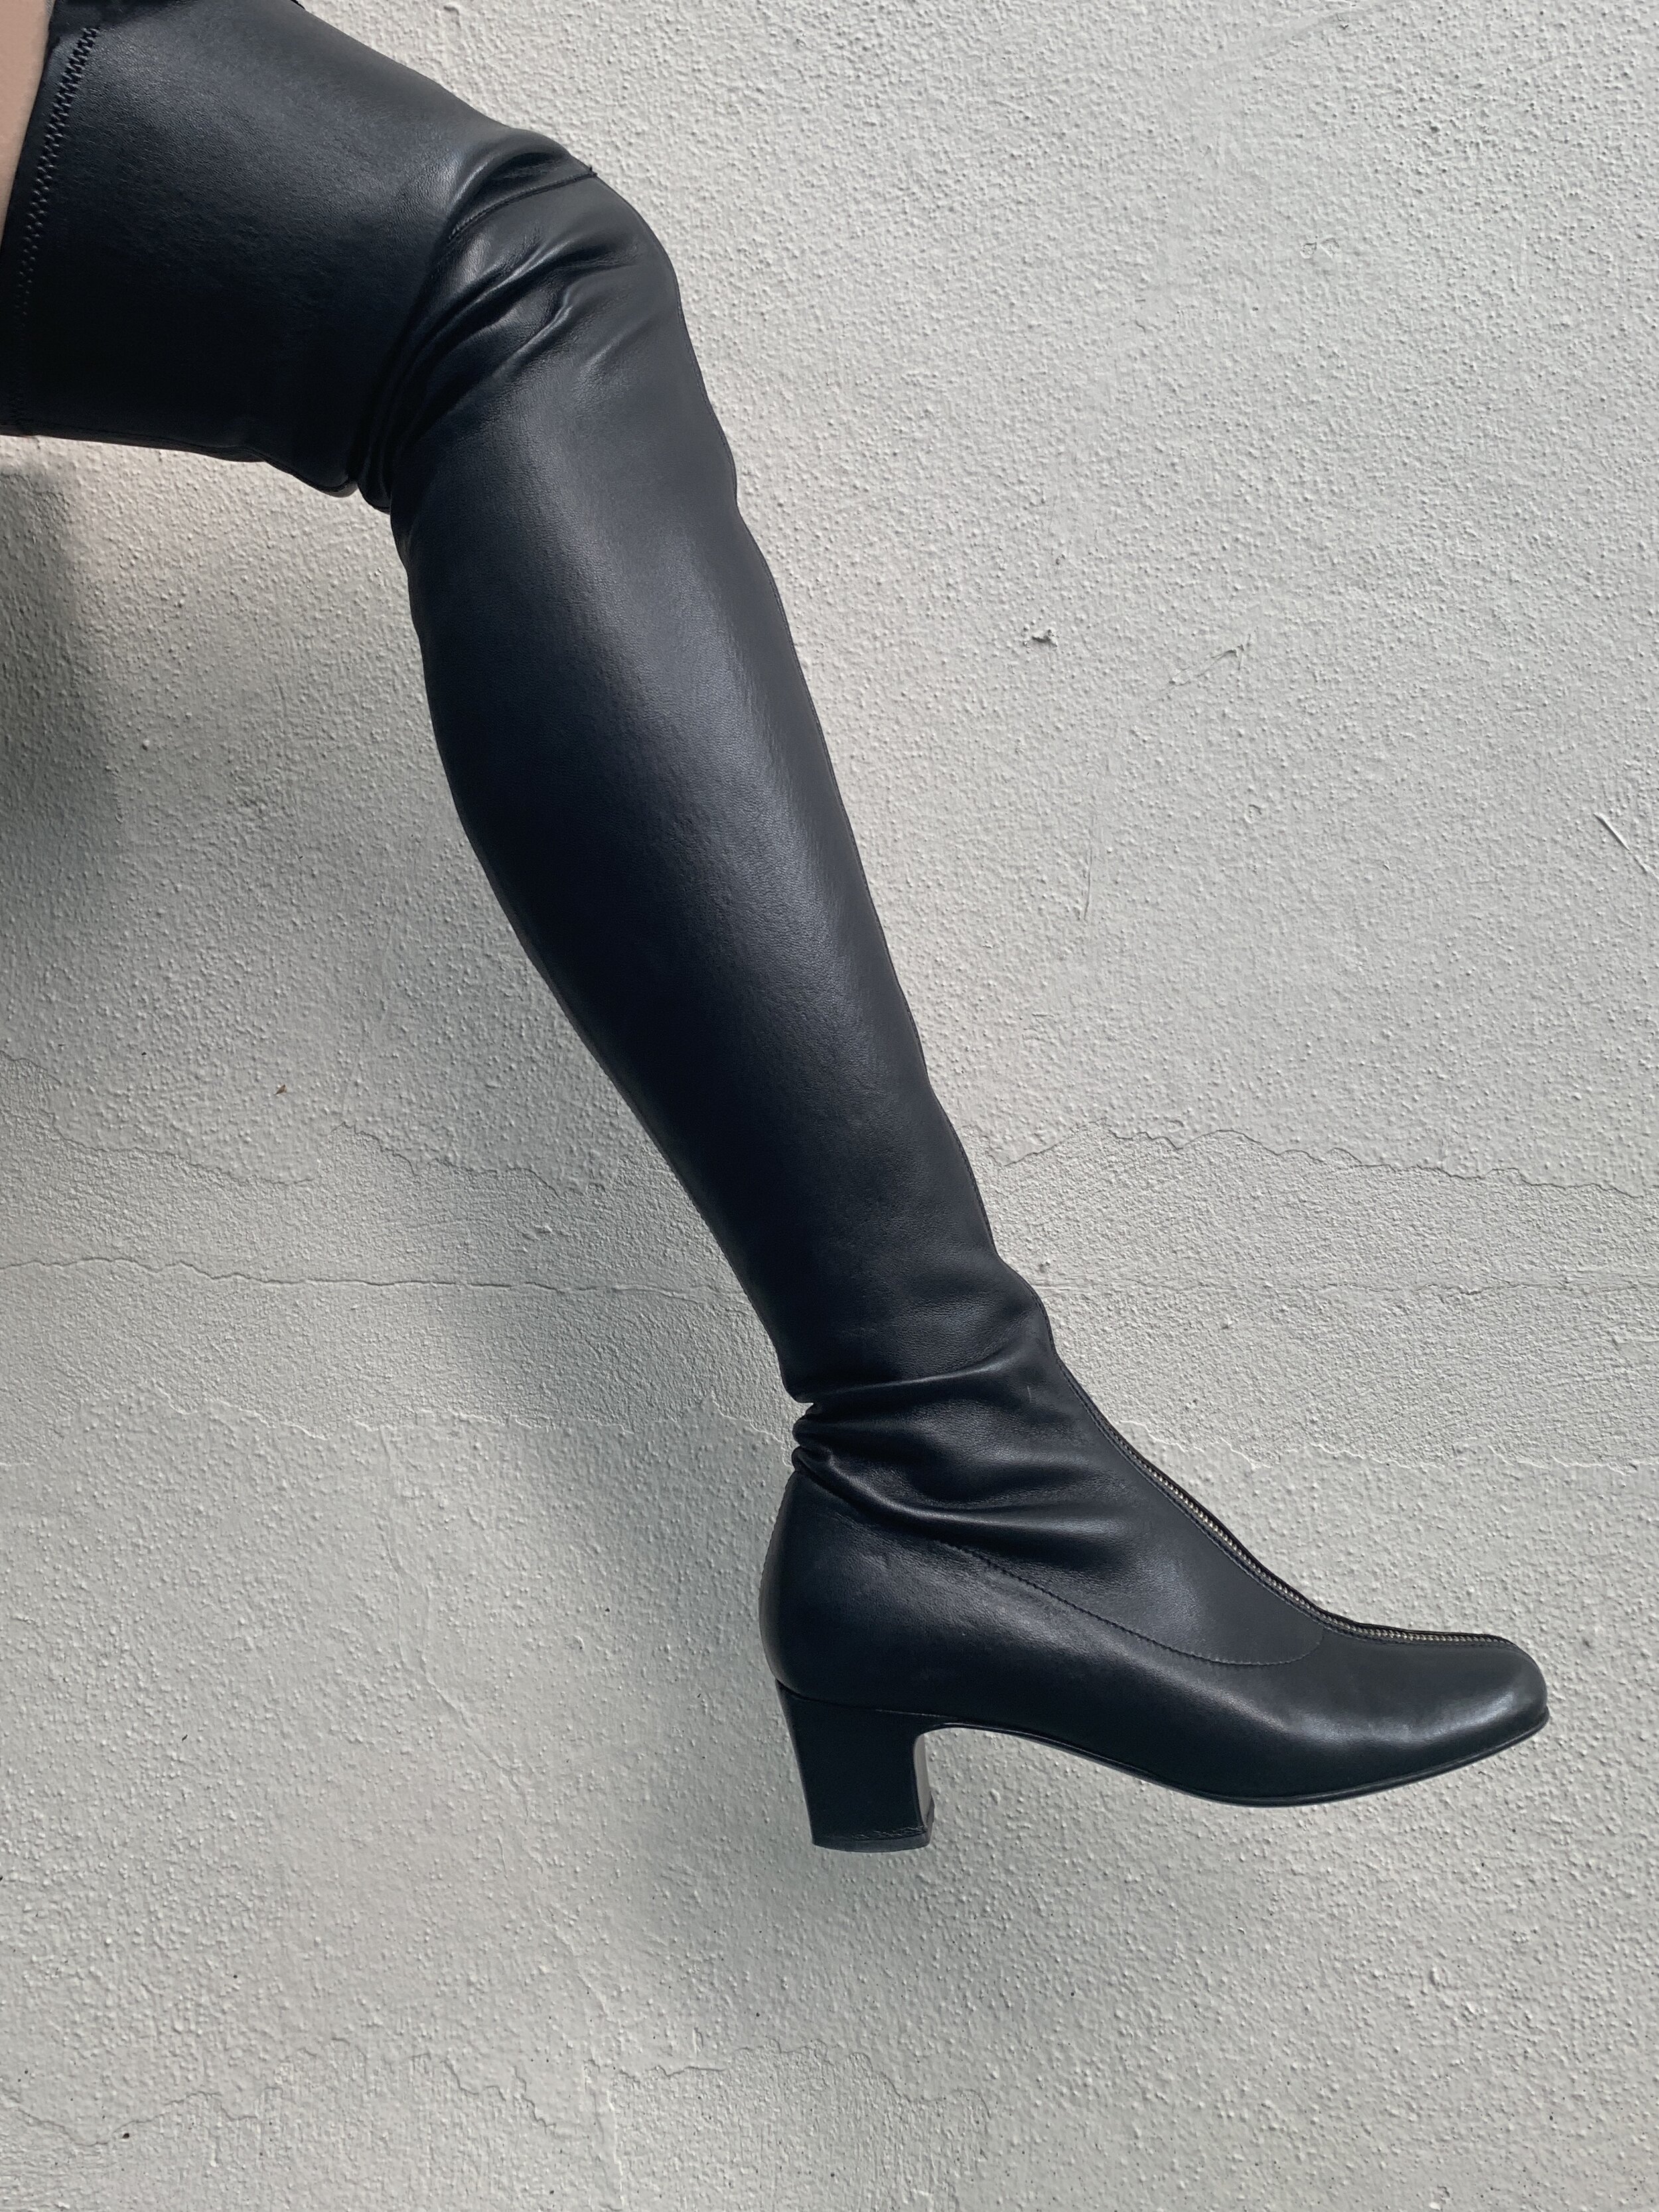 Chanel Thigh High Rubber Rain Boots Dark Beige  G39625 X56326 K5218  US